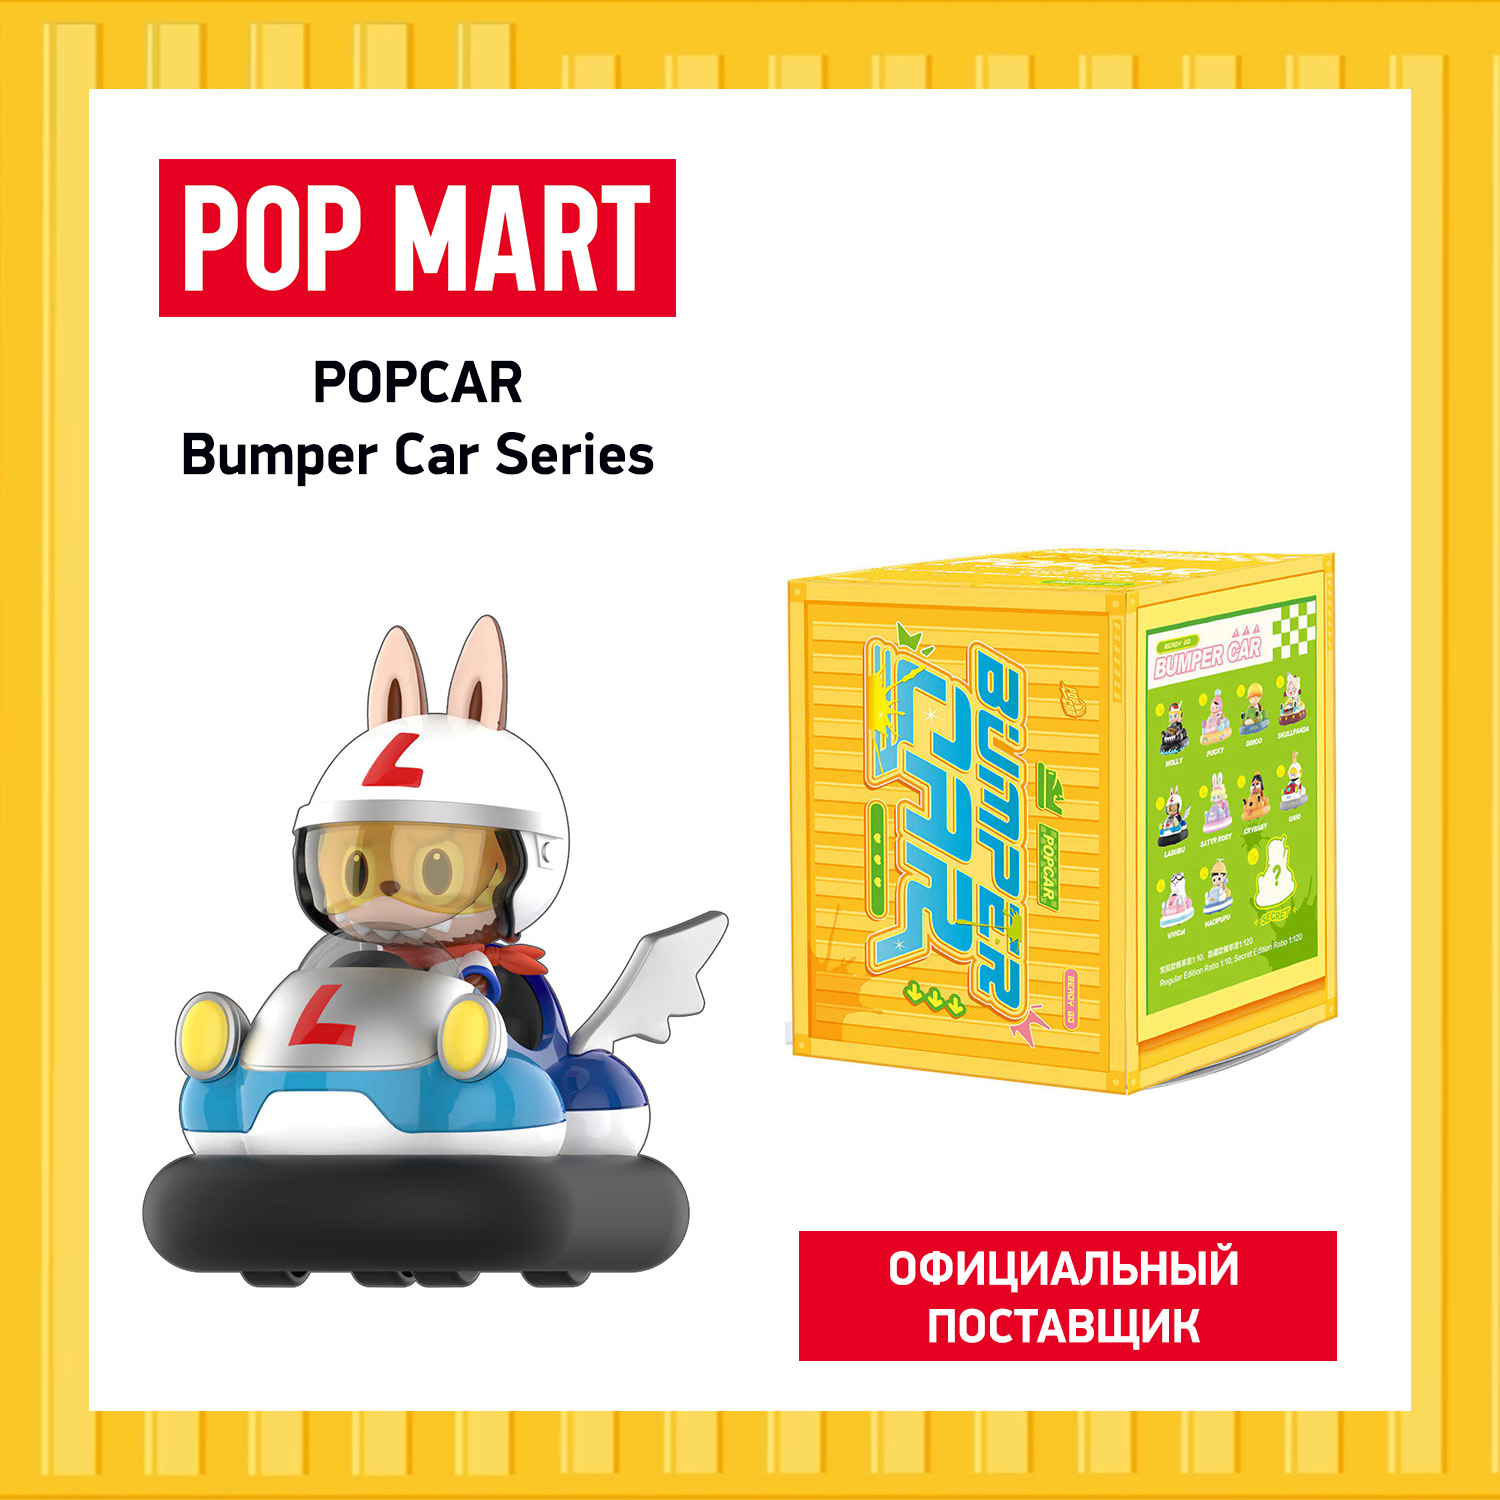 Коллекционная фигурка Pop Mart Popcar Bumper Car коллекционная фигурка pop mart duckyo friends wage earner